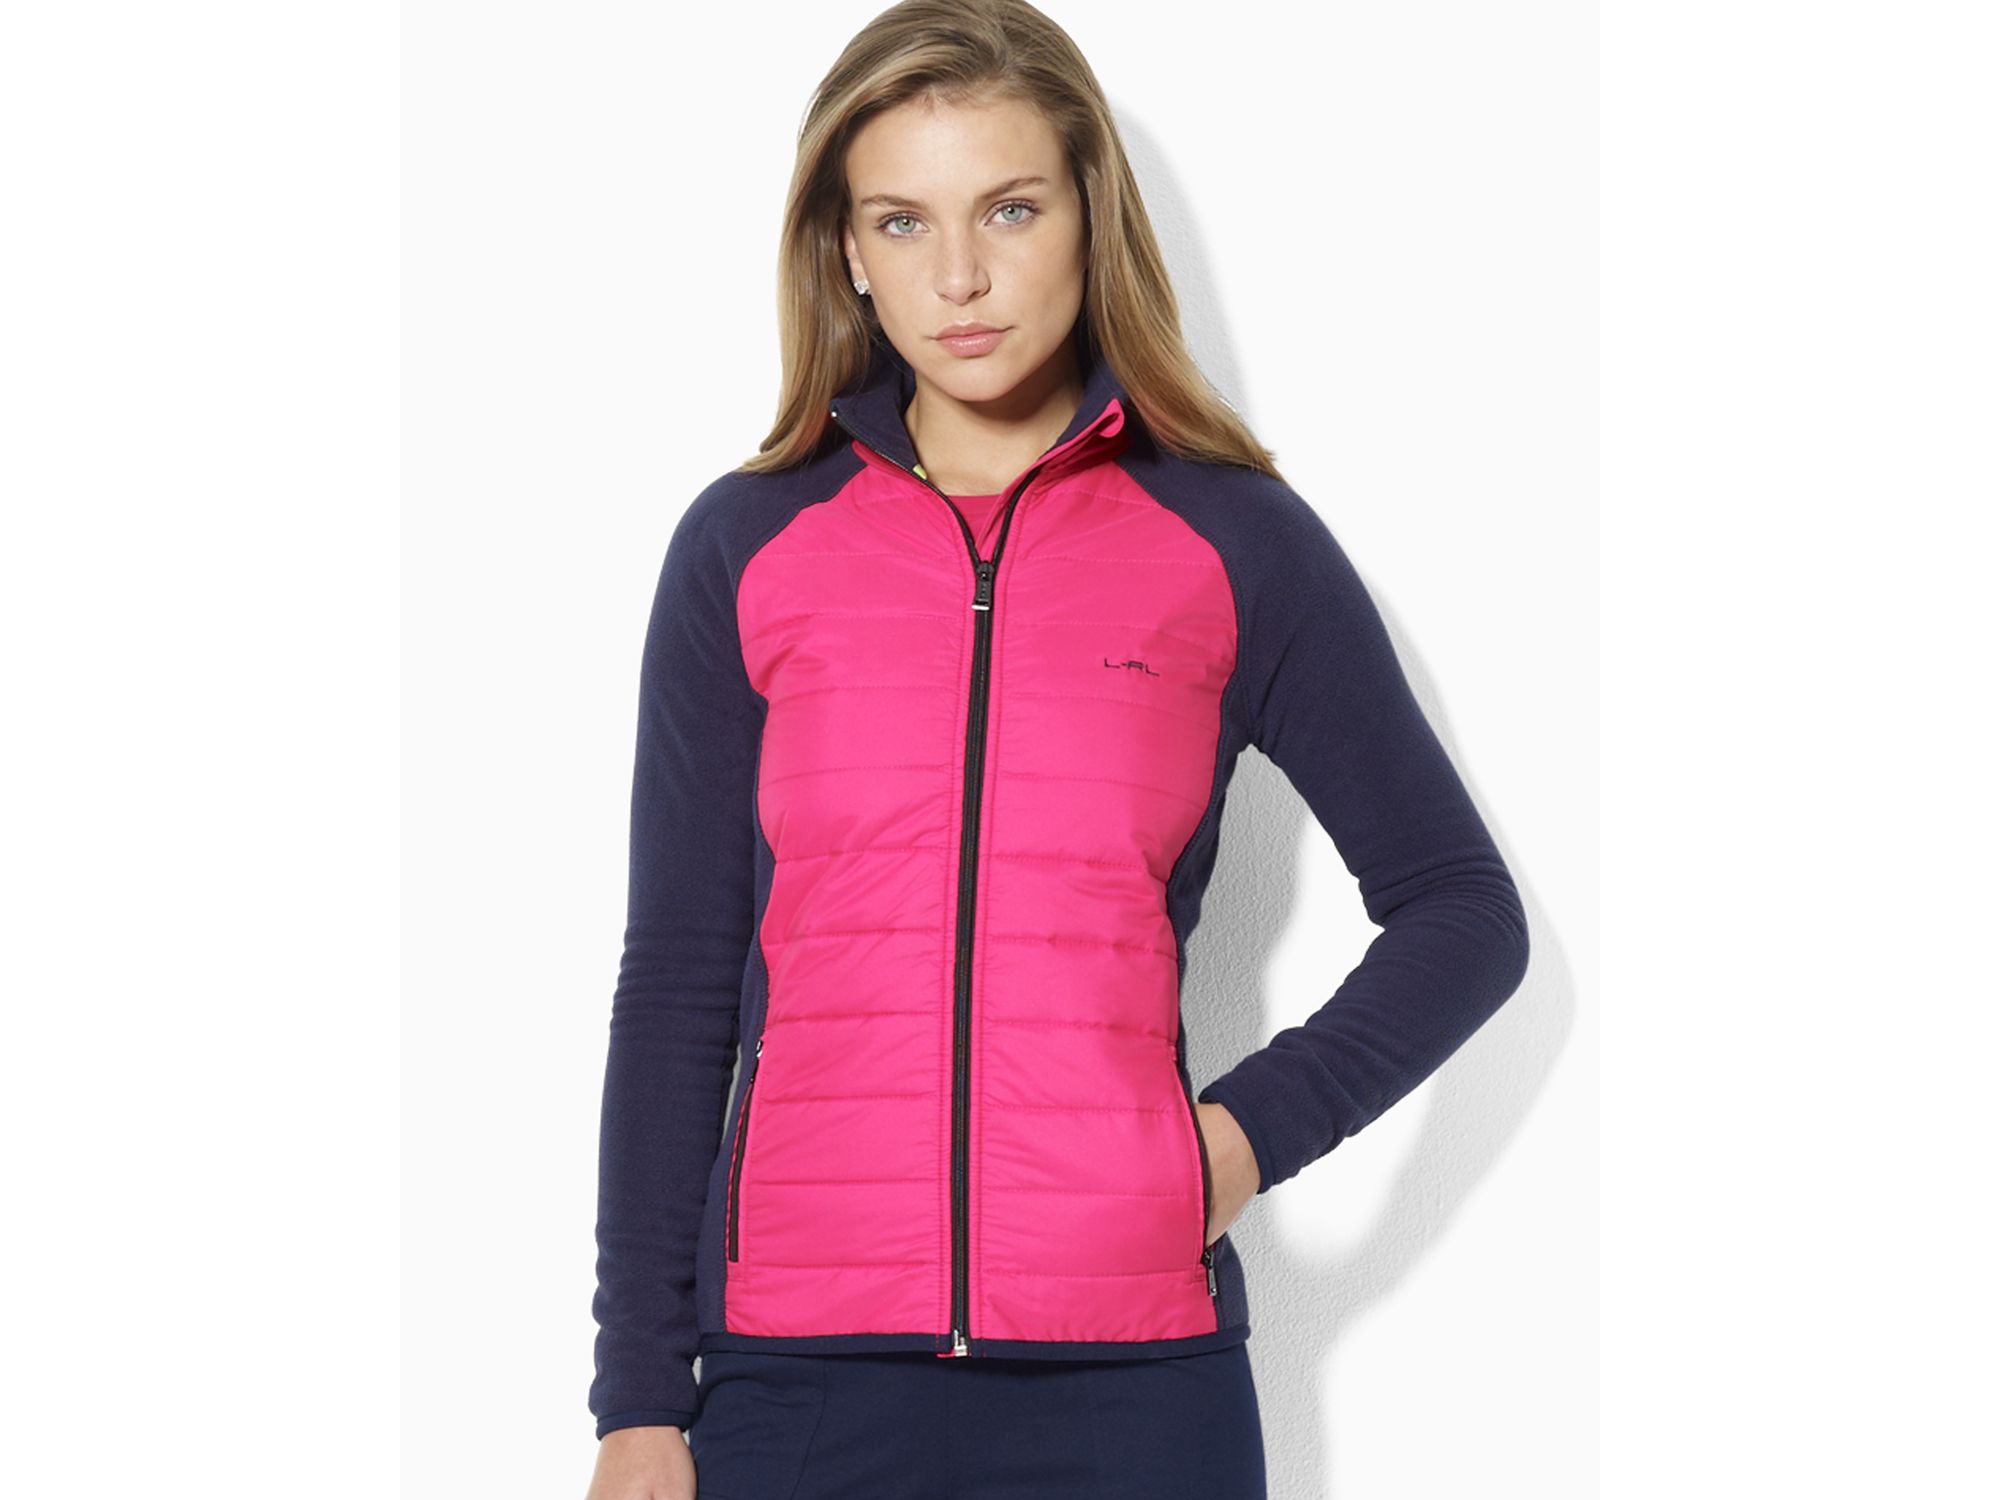 Lauren by Ralph Lauren Full Zip Active Jacket in Pink - Lyst